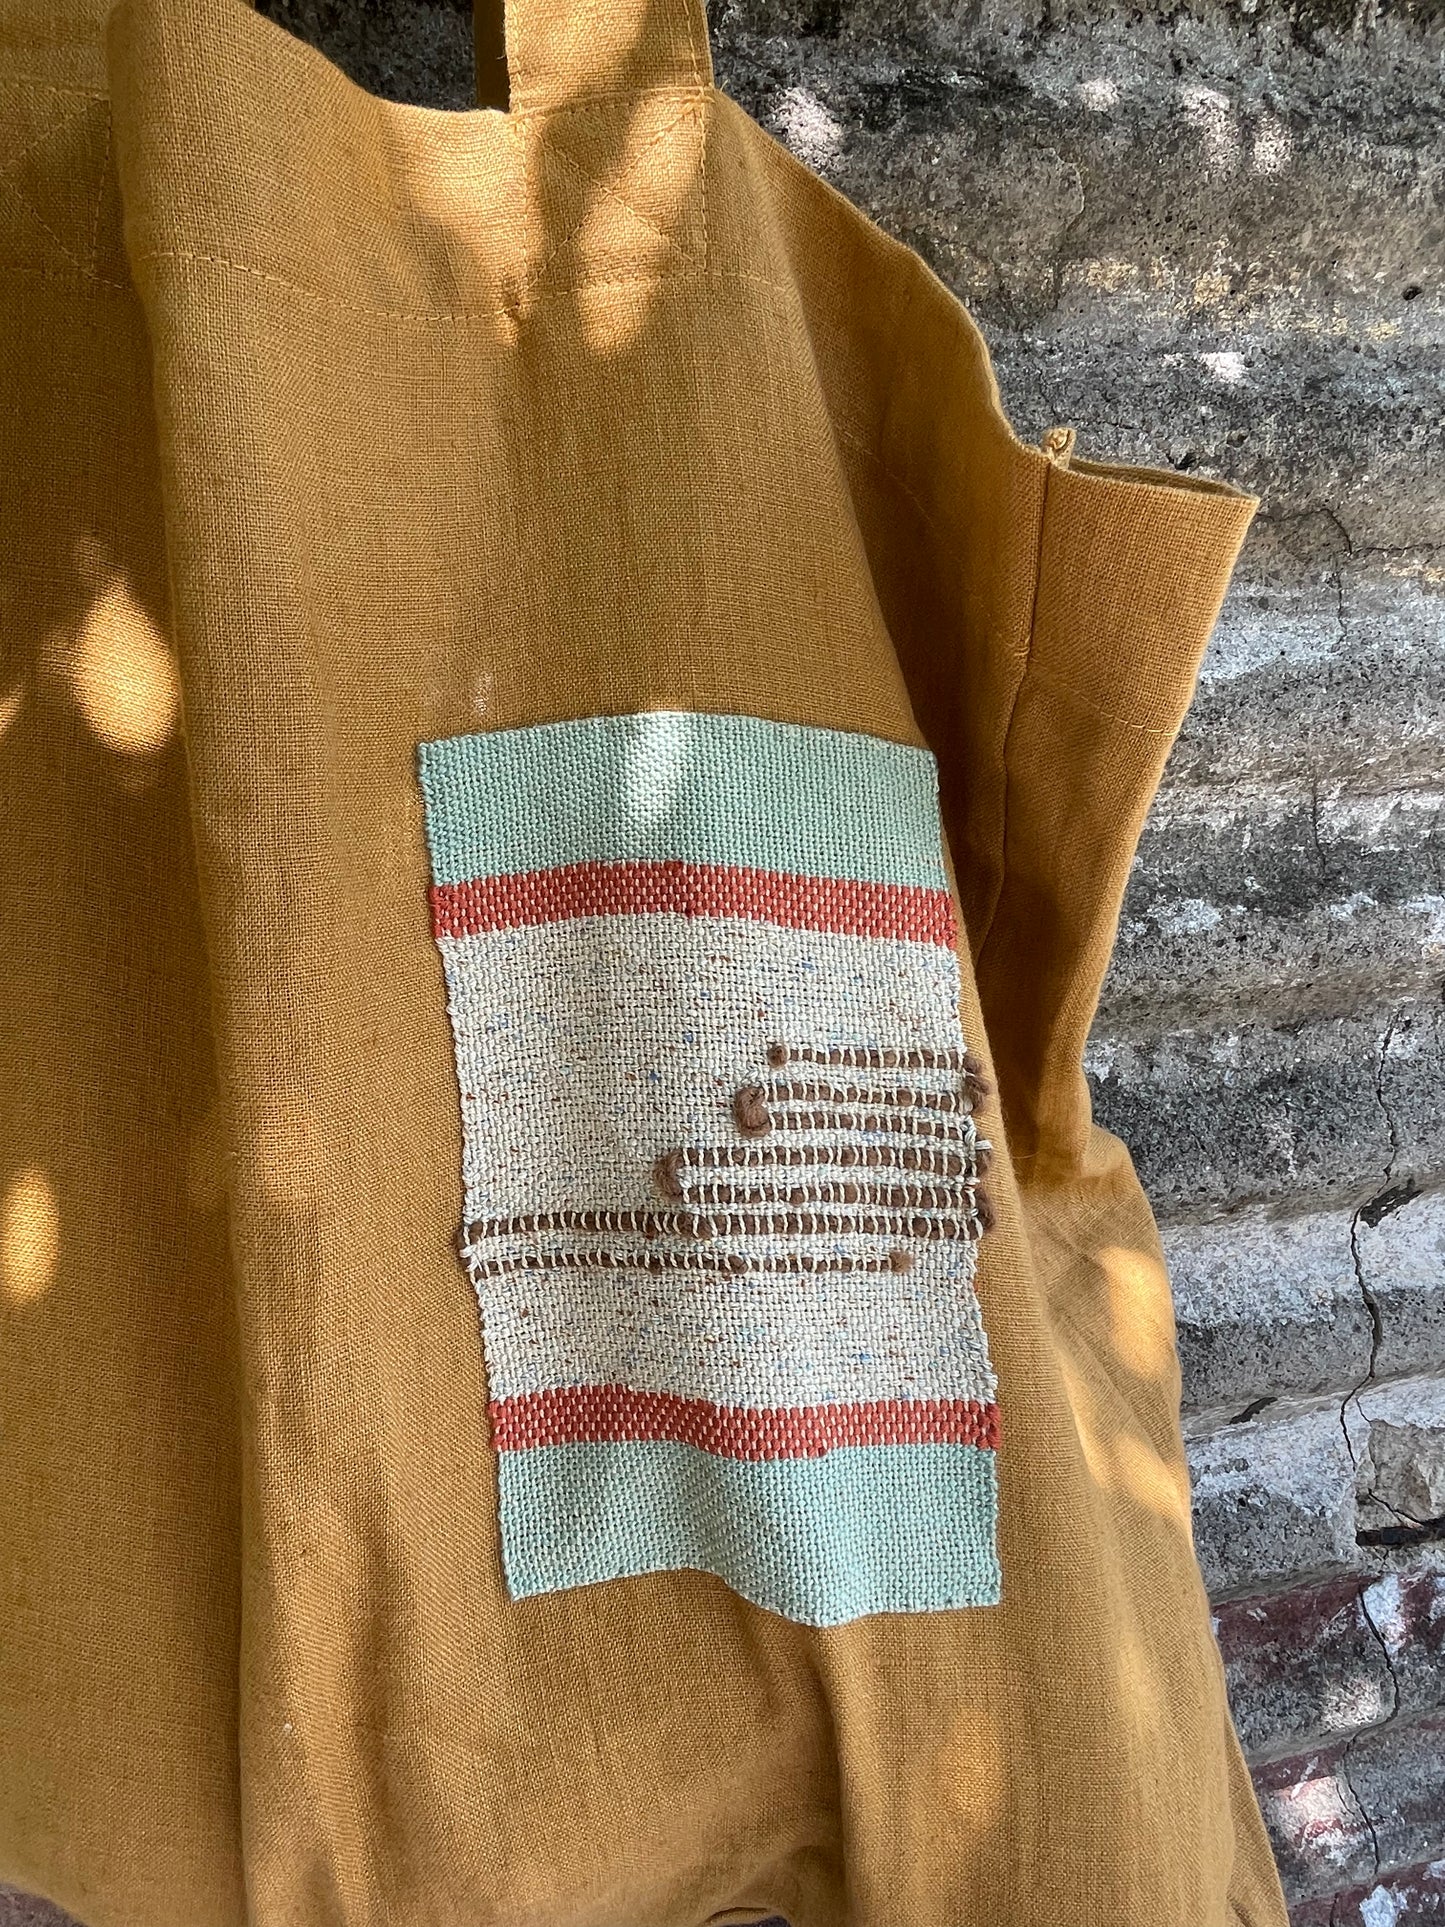 Linen Bag ~ Woven Art